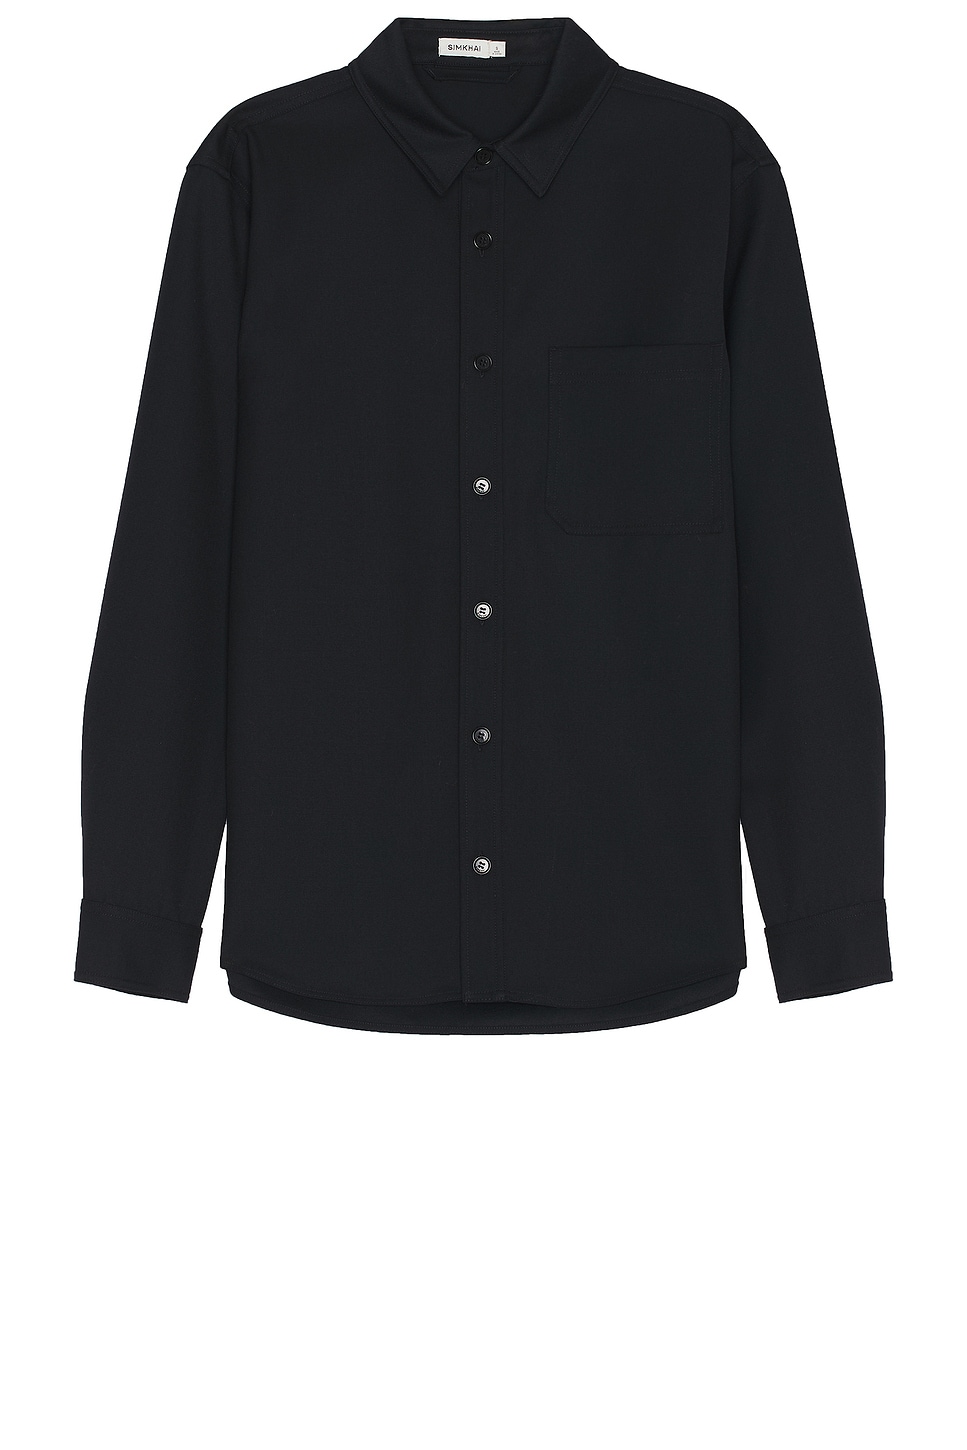 Image 1 of SIMKHAI Rocco Shirt Jacket in Black